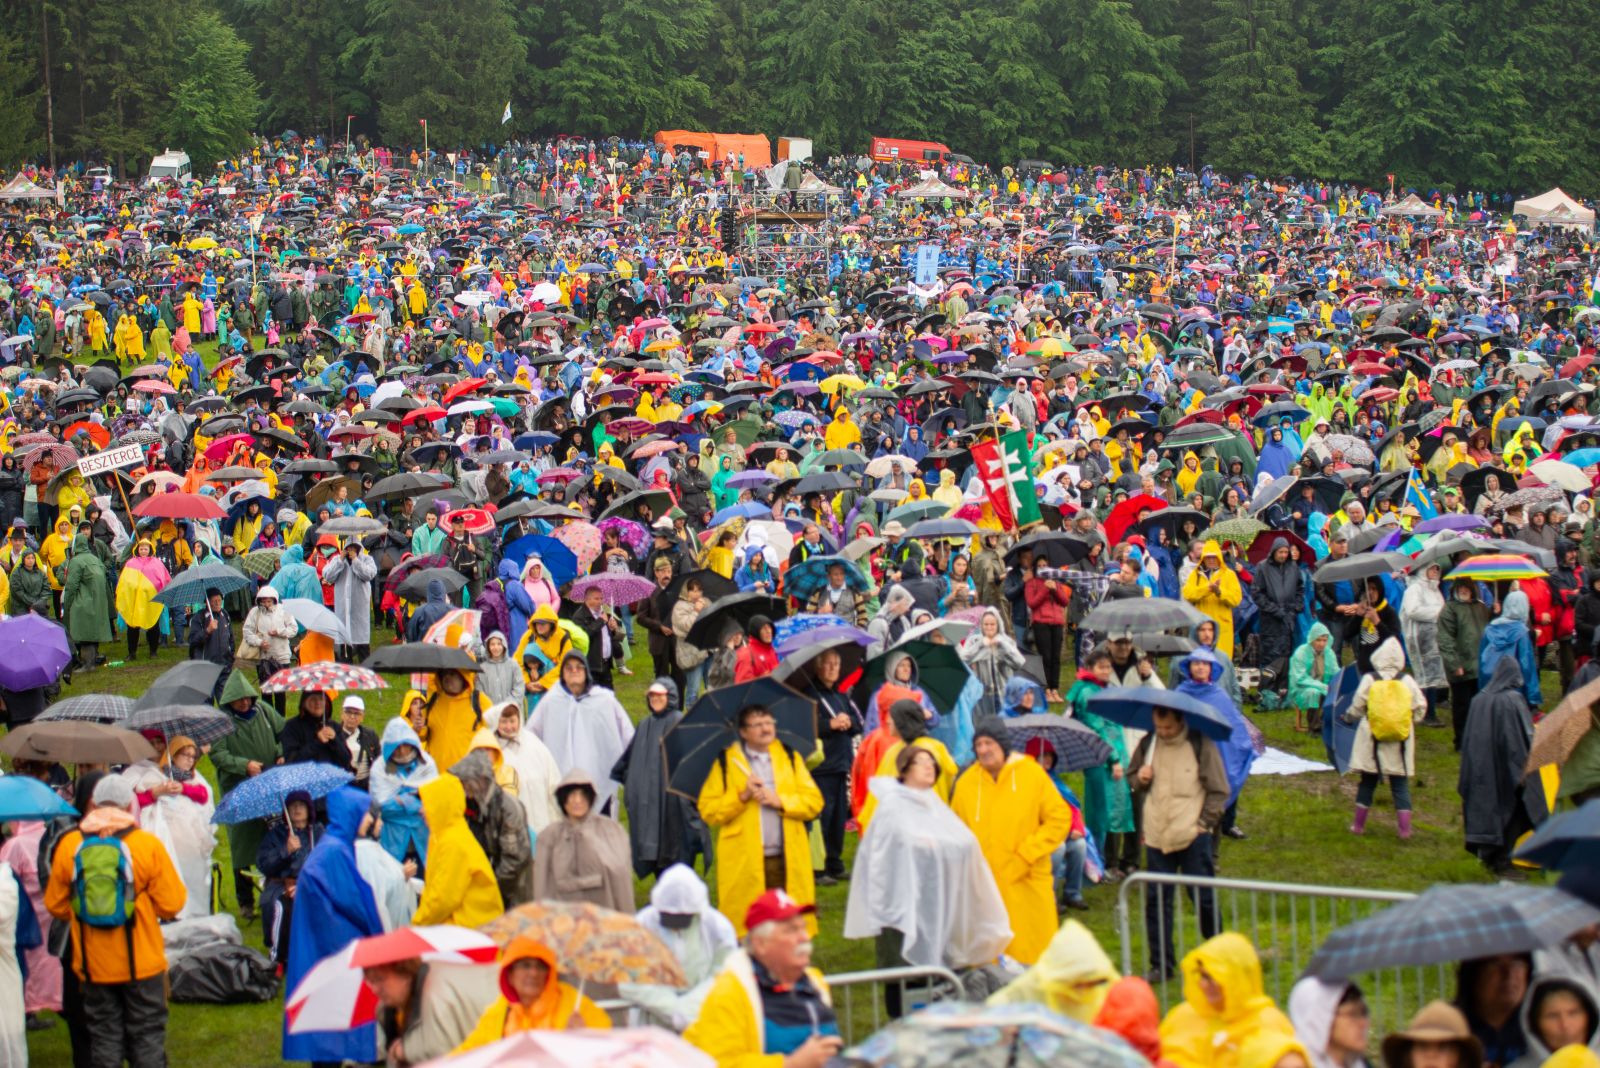 Esernyőerdő fedezékében, esőkabátokba burkolózva várták az emberek Ferenc pápa érkezését. Később elállt az eső és a szentmise végére kisütött a nap is.